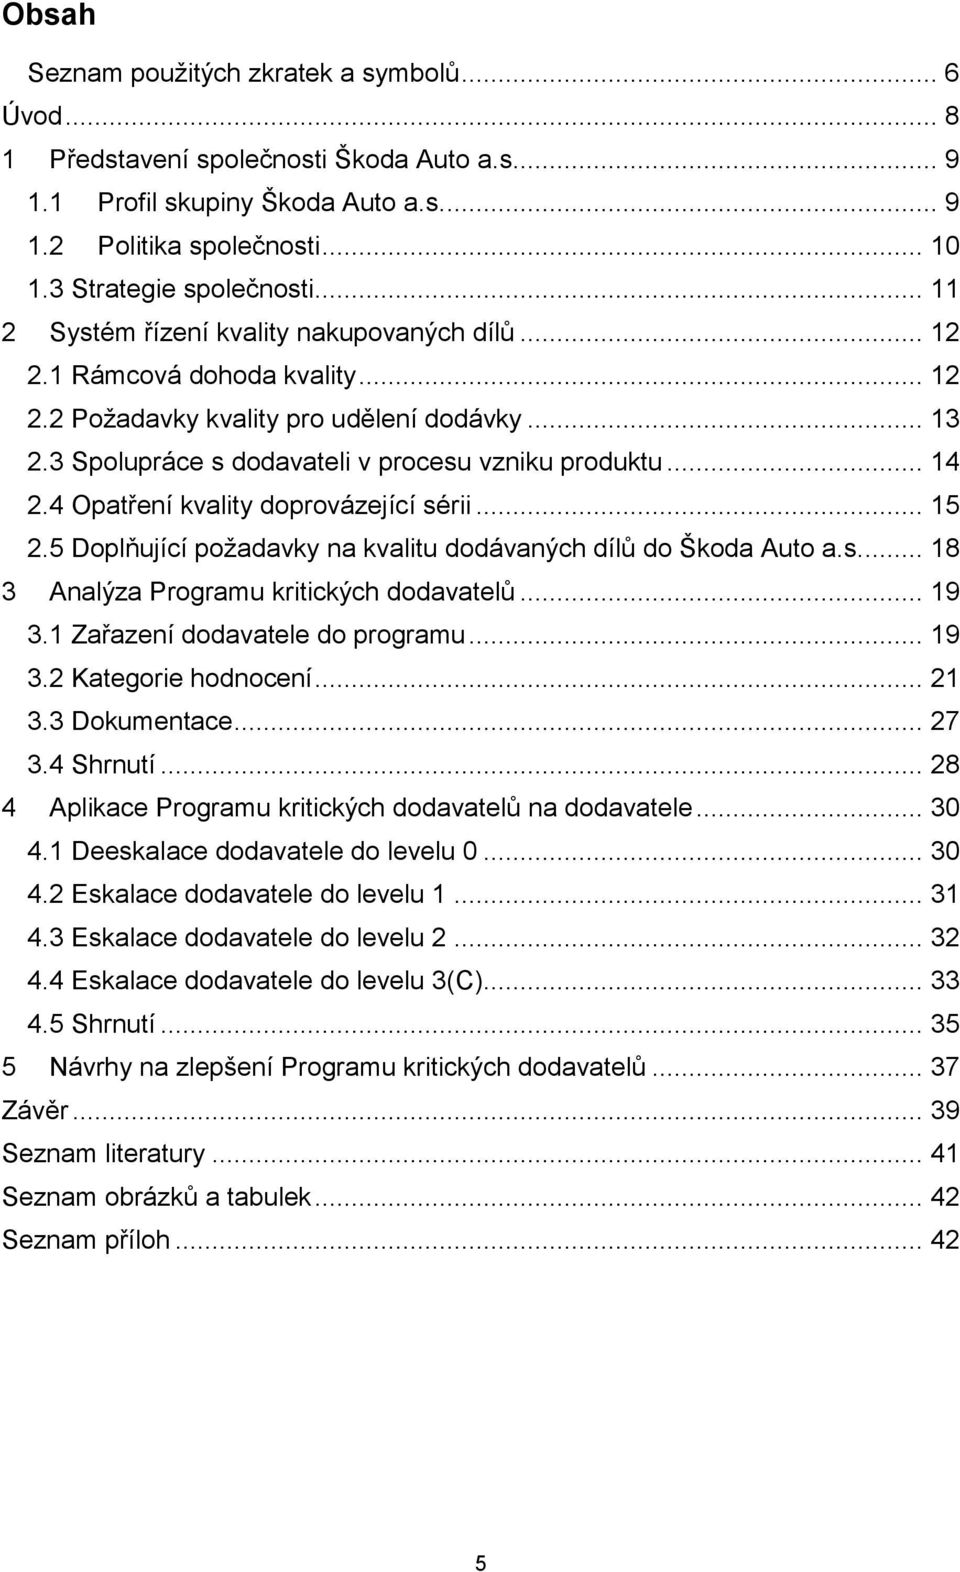 4 Opatření kvality doprovázející sérii... 15 2.5 Doplňující požadavky na kvalitu dodávaných dílů do Škoda Auto a.s... 18 3 Analýza Programu kritických dodavatelů... 19 3.